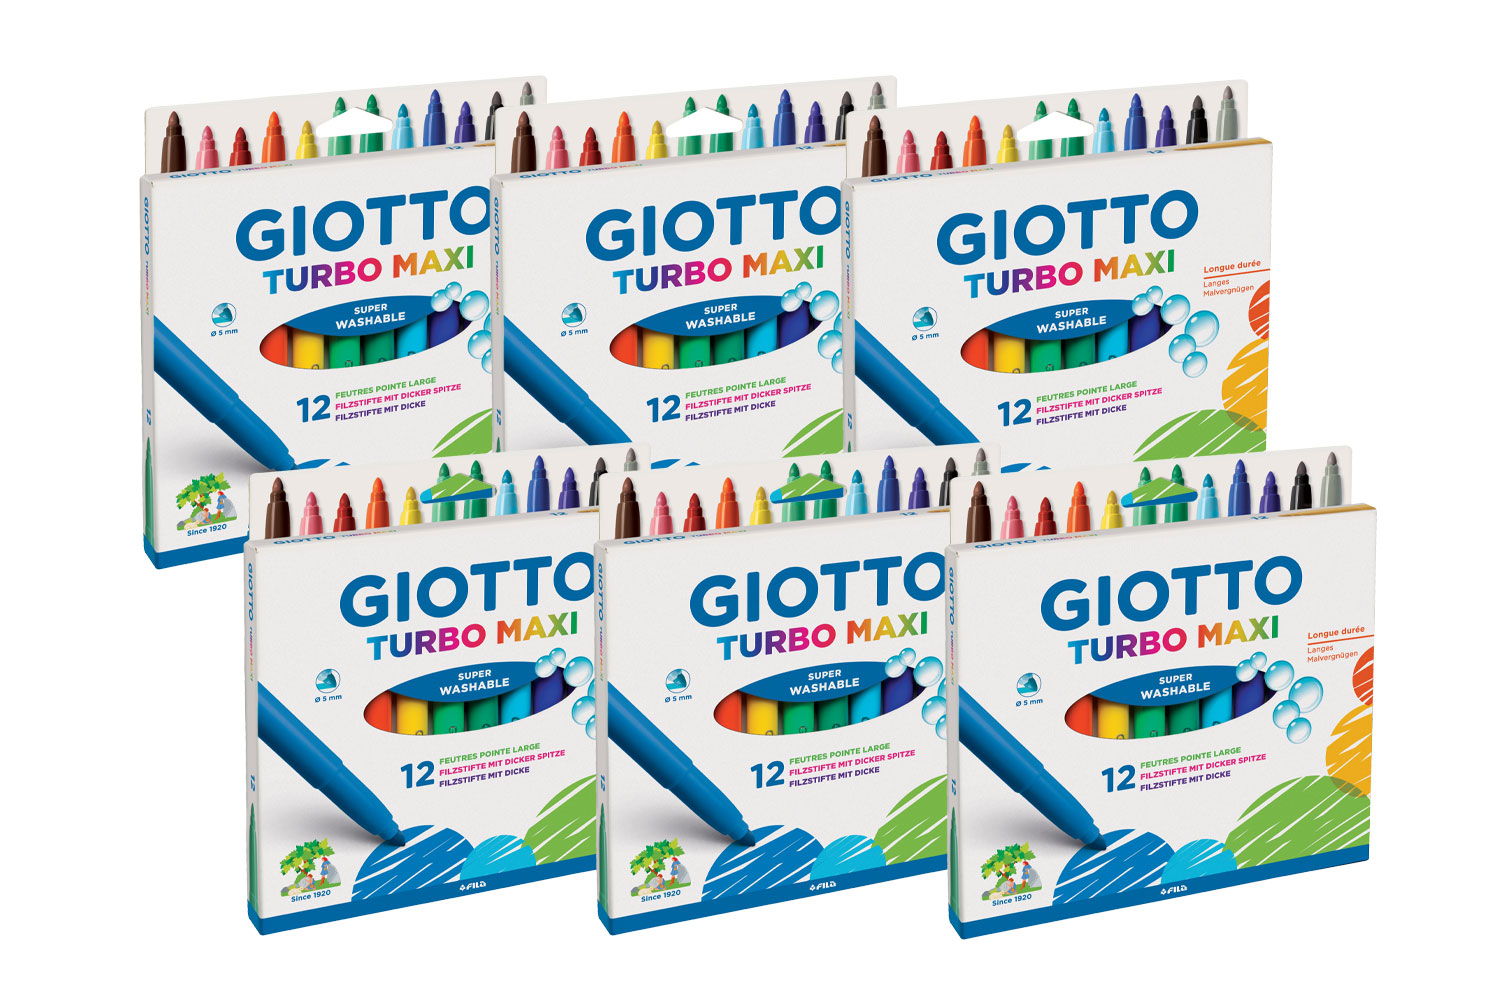 Feutre de coloriage Turbo Maxi GIOTTO x 48 - Coffret école